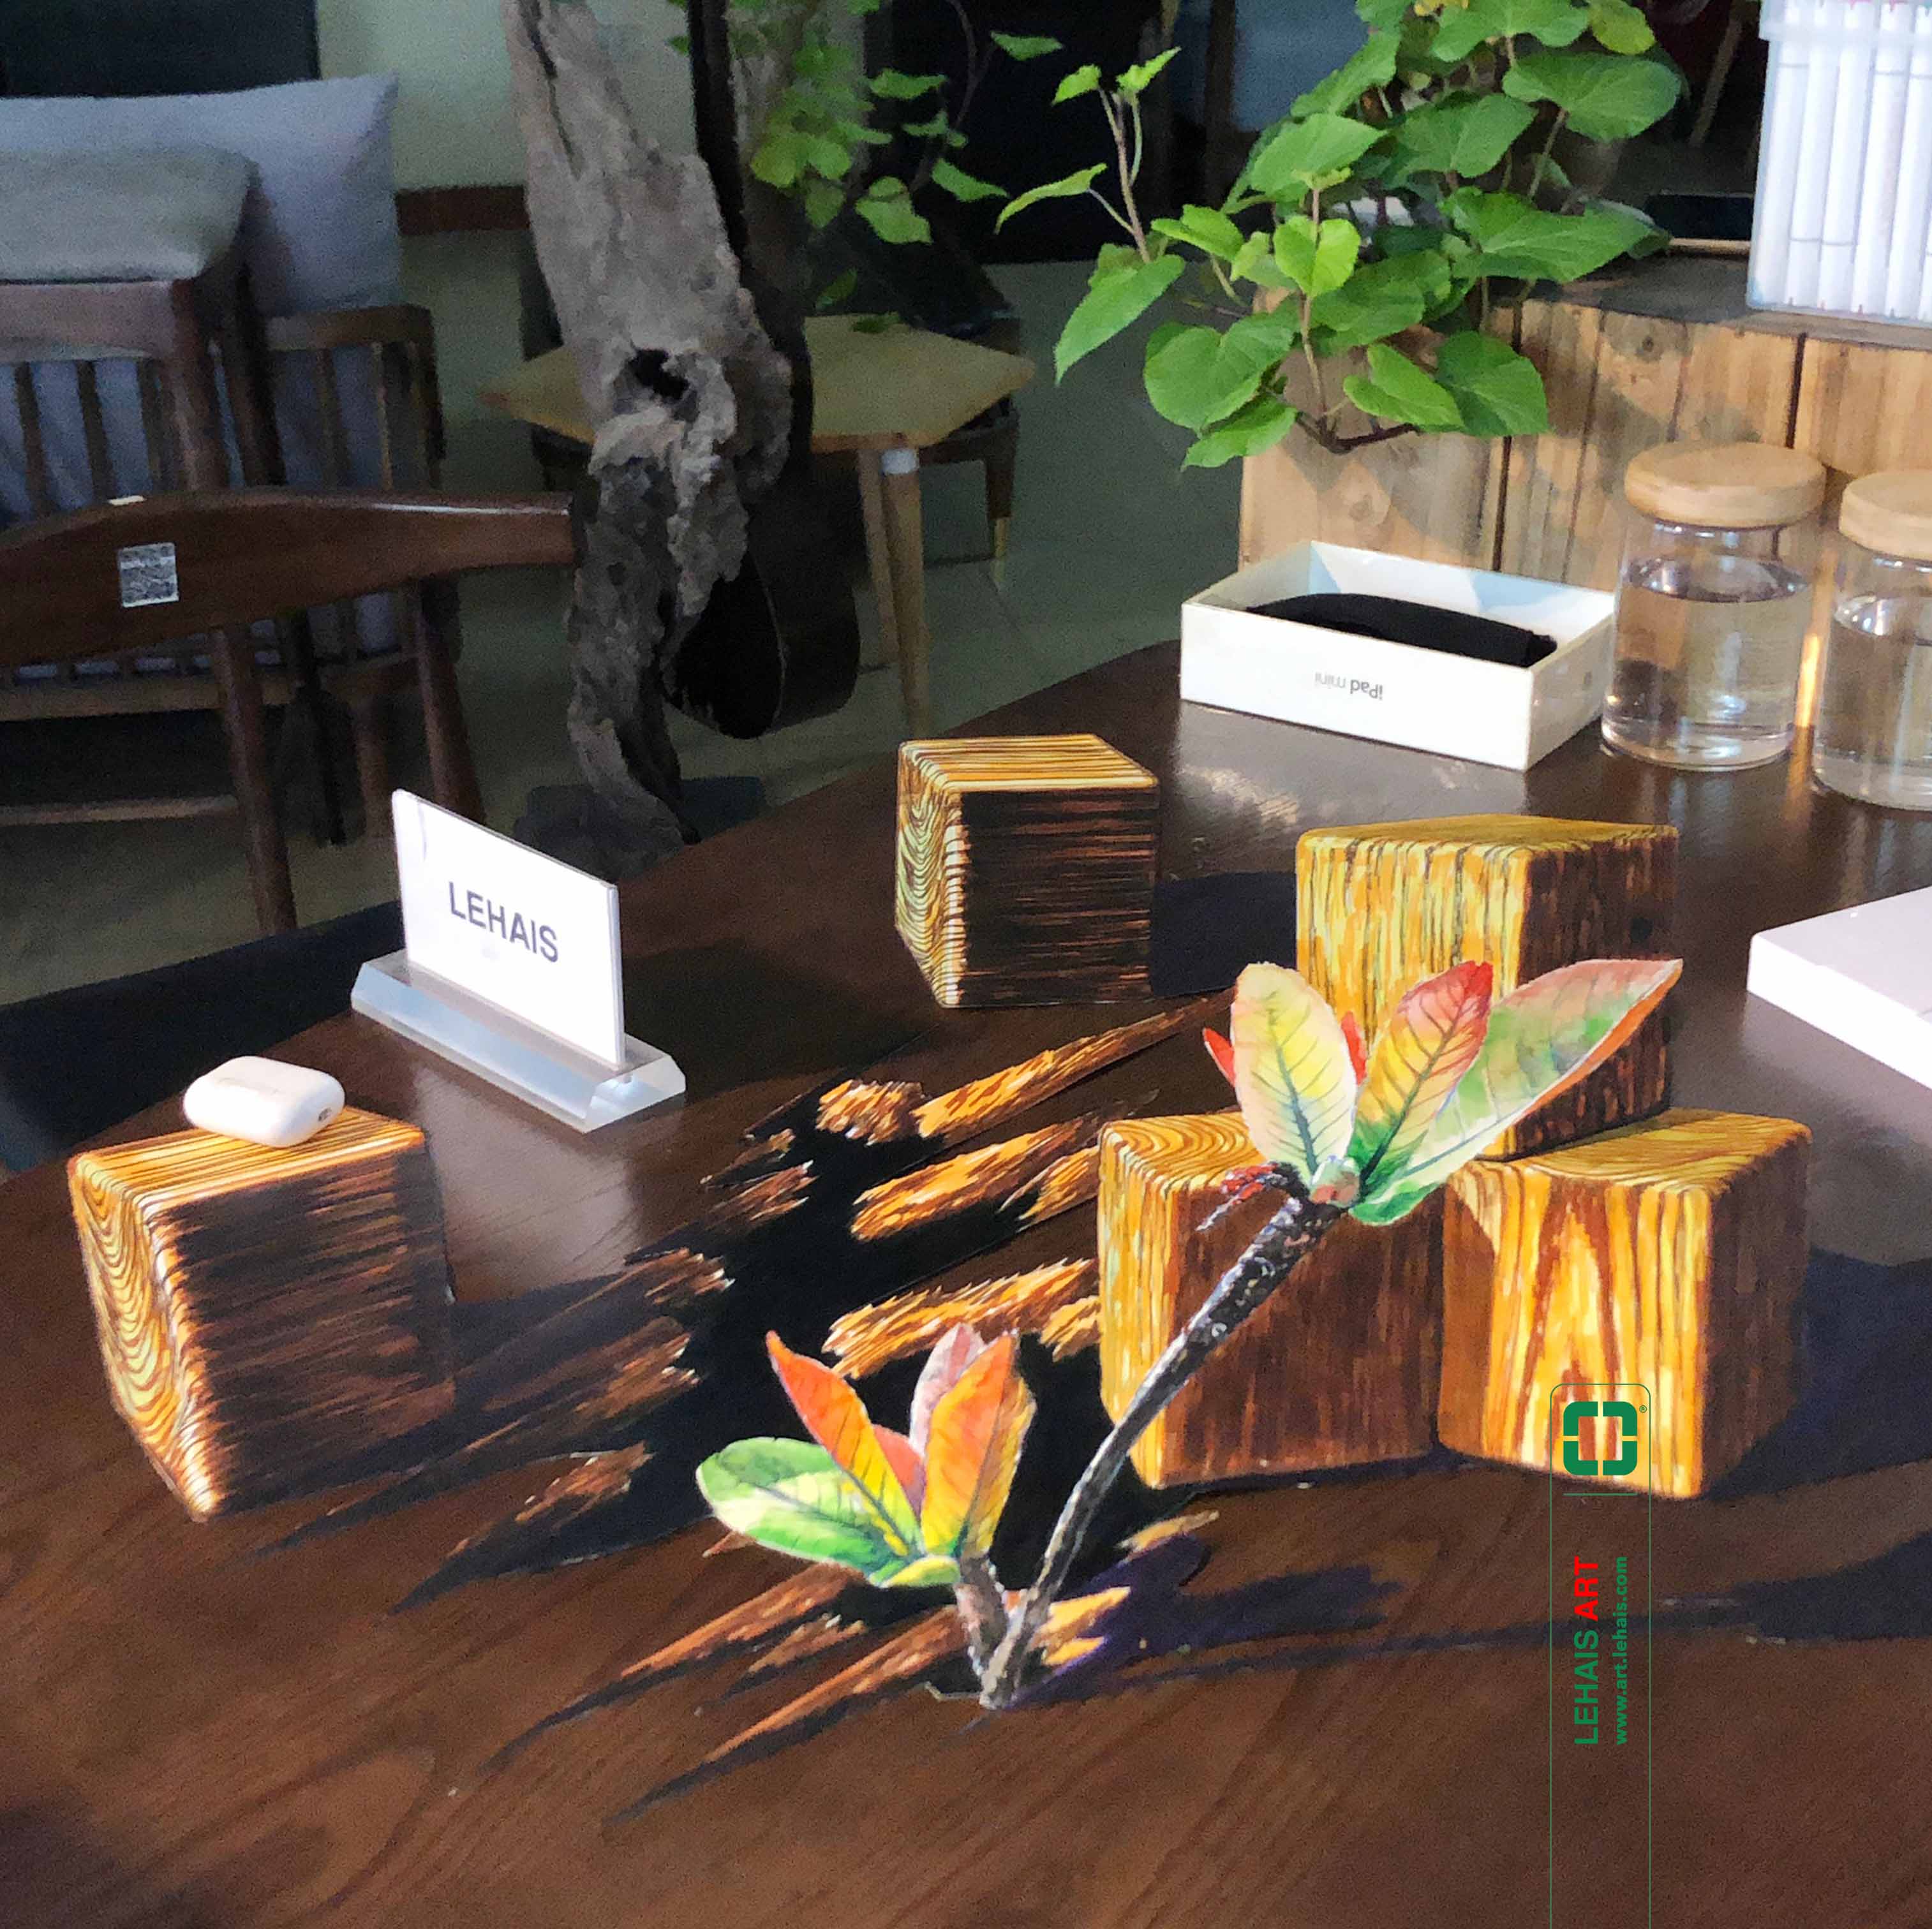 Vẽ bức tranh 3D hiệu ứng với hình khối gỗ và chồi cây mọc trên mặt bàn - TMN68LHAR